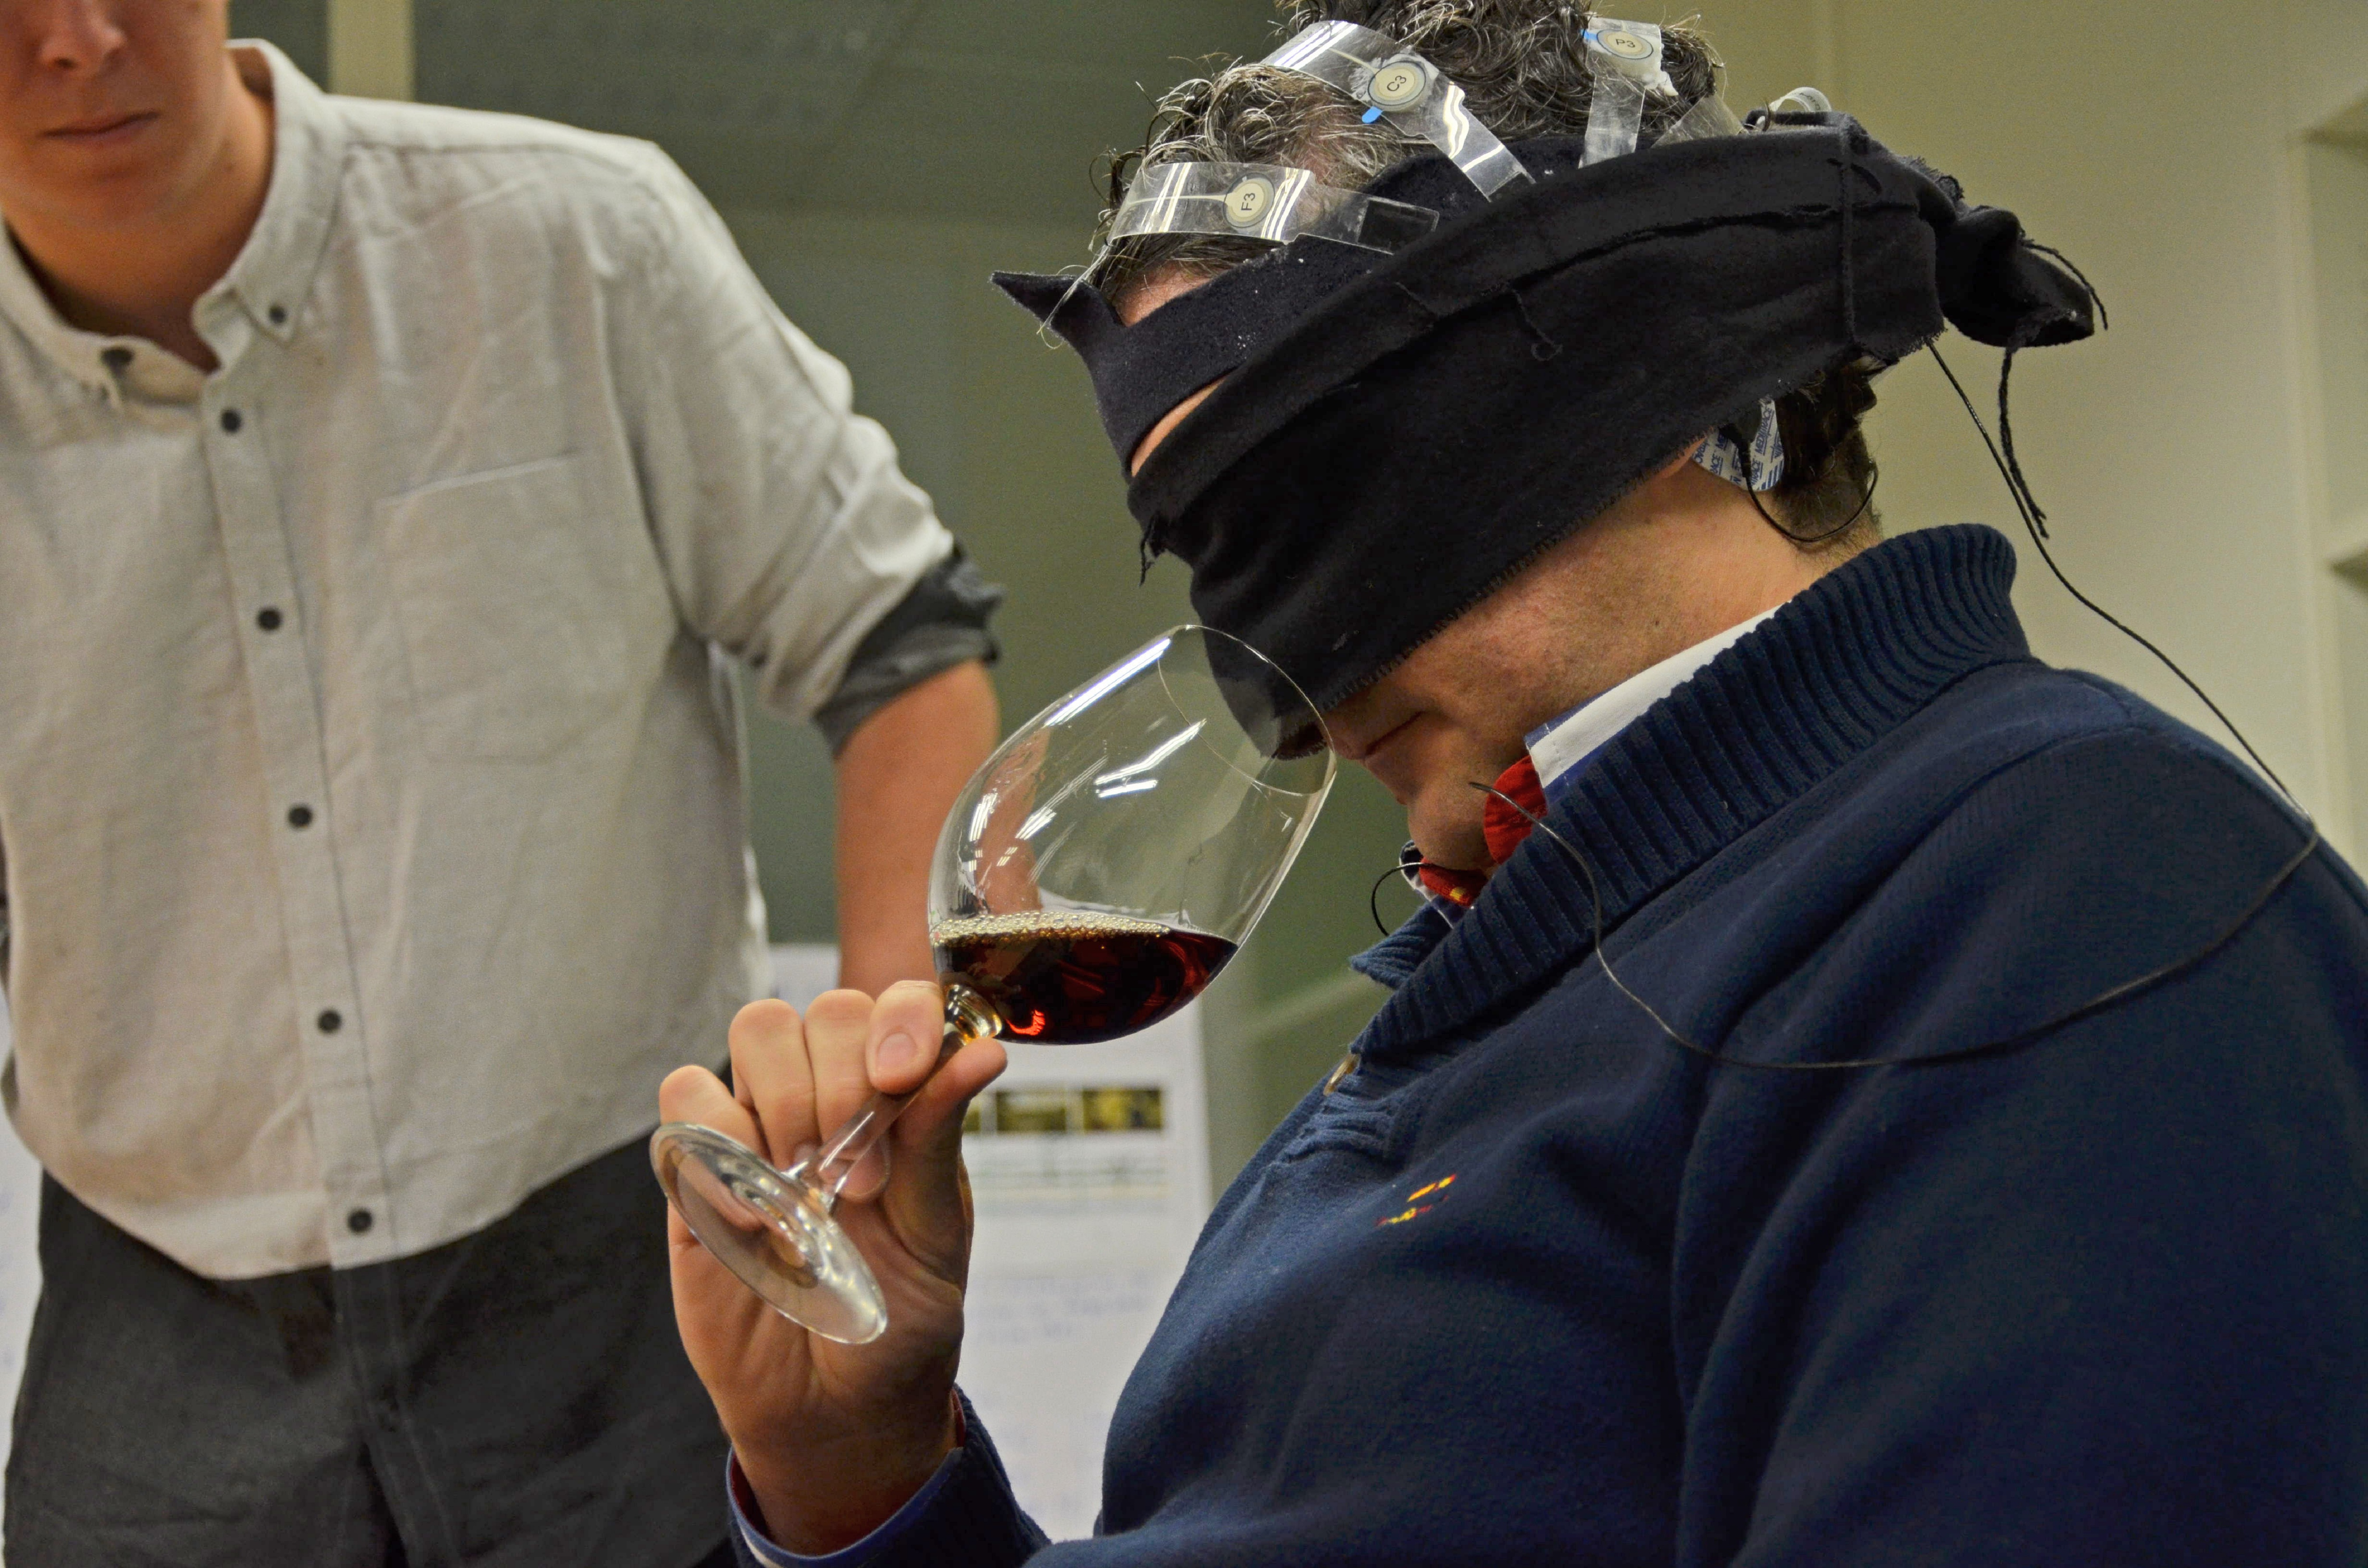 El sumiller Román Cerrillo, probando el vino mientras escucha flamenco. Fuente: UPV.